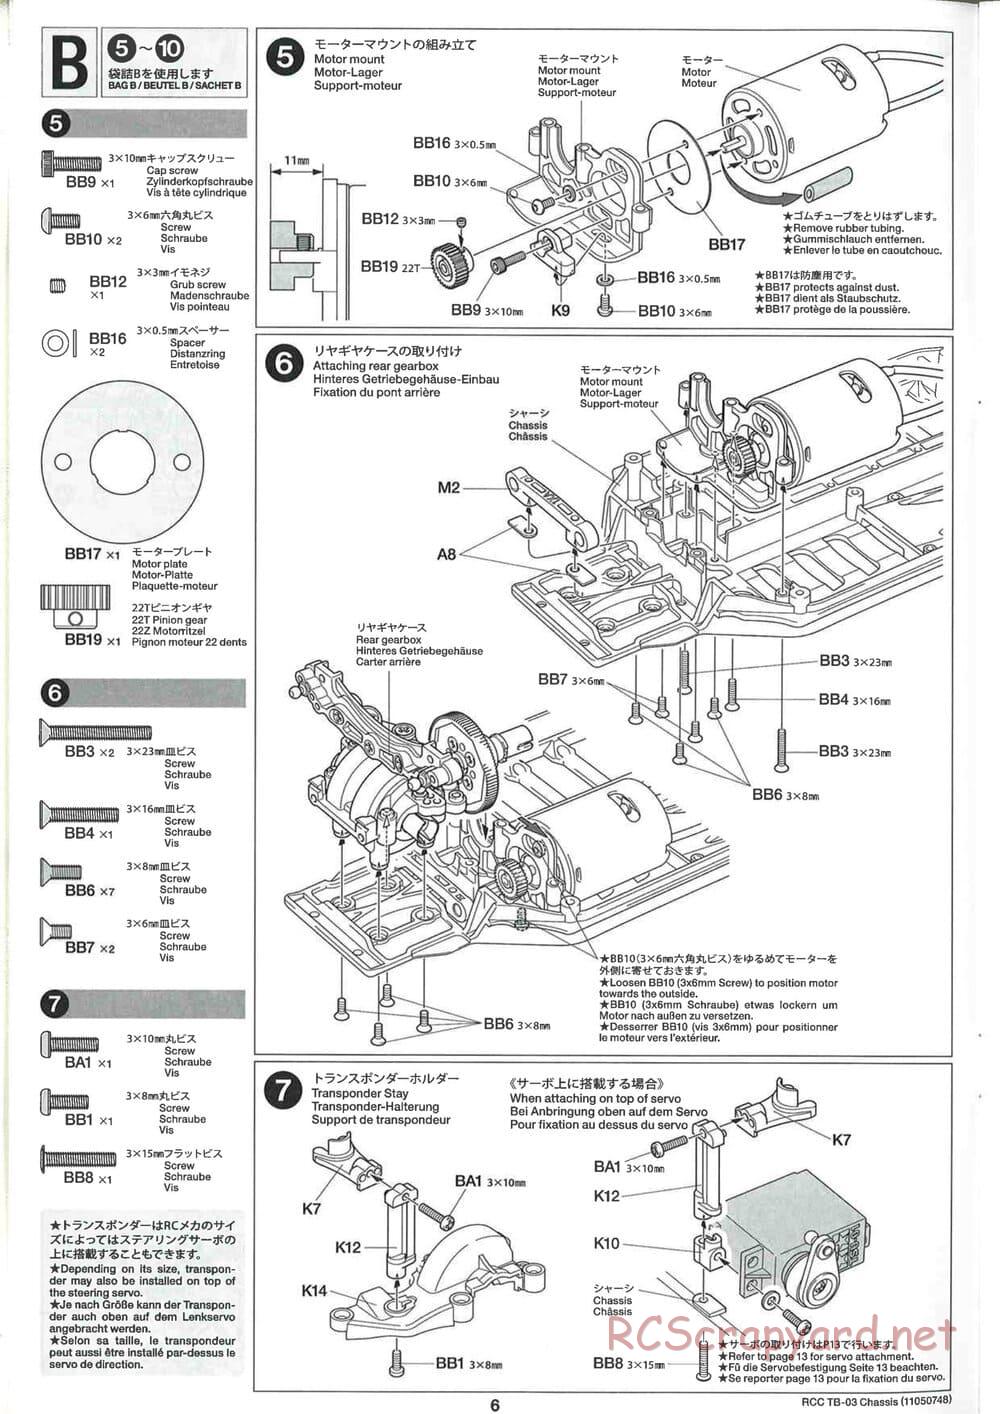 Tamiya - TB-03 Chassis - Manual - Page 6